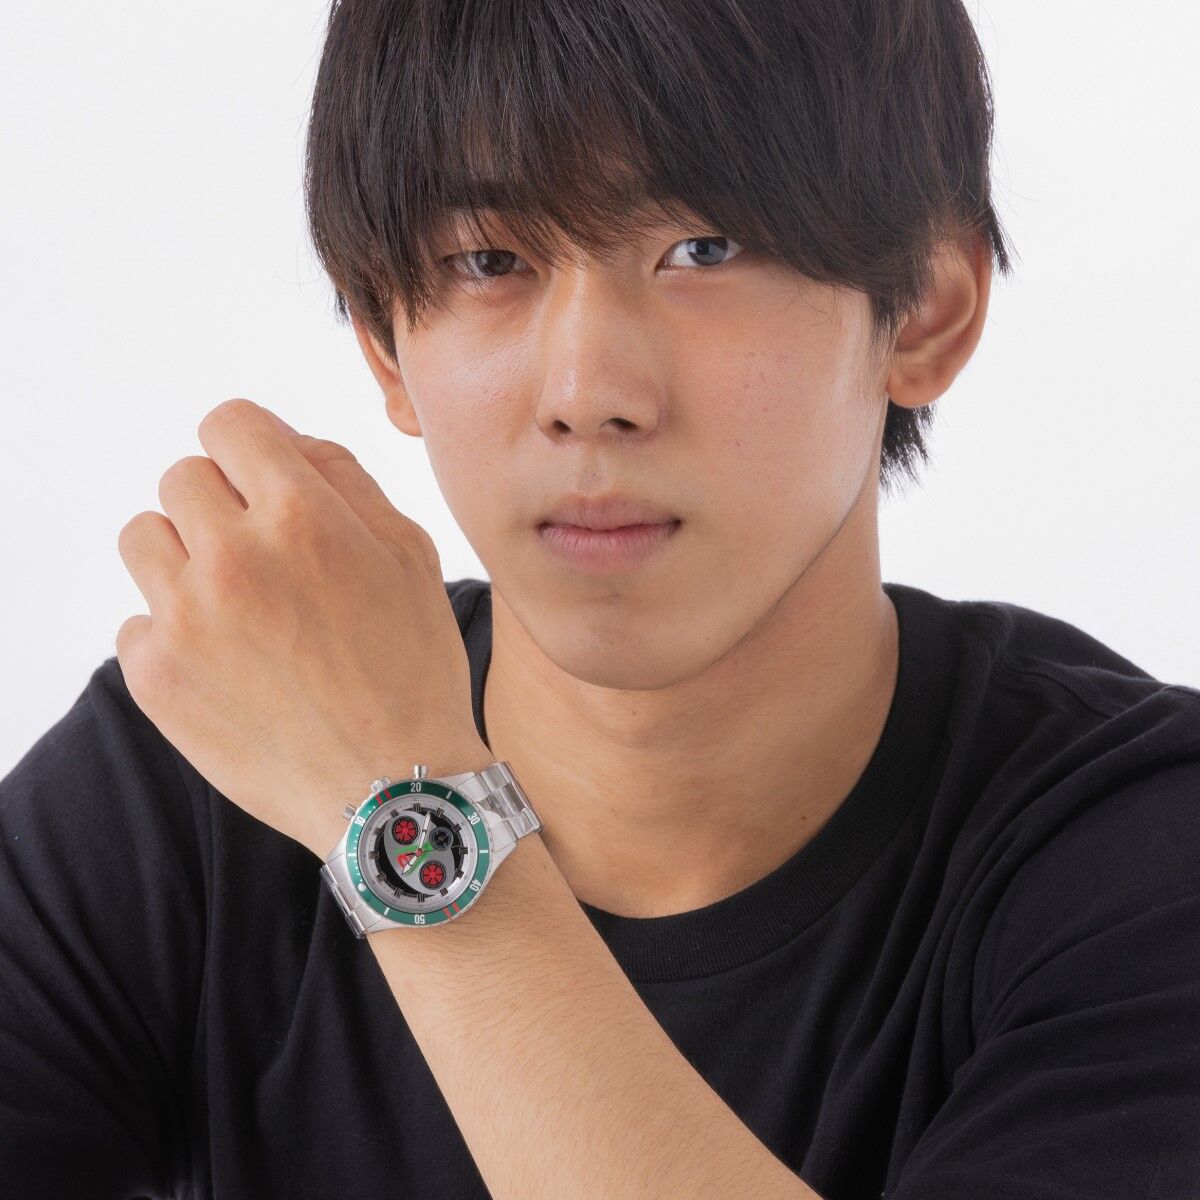 仮面ライダーV3 クロノグラフ腕時計【Live Action Watch】 | 仮面